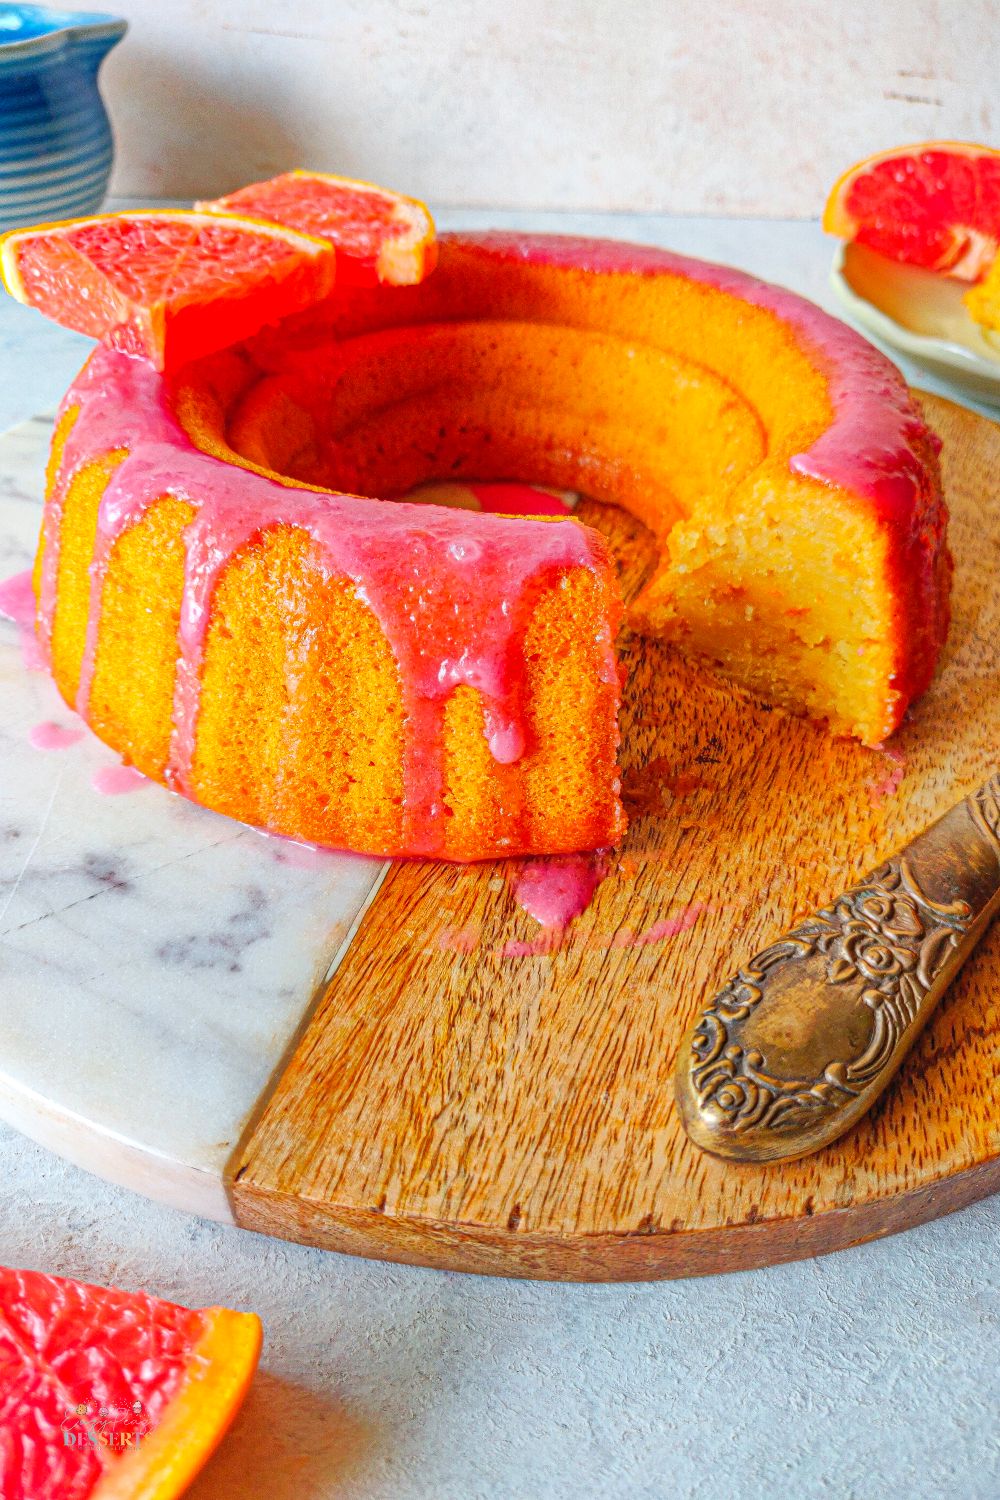 Close up image of orange bundt cake made with blood oranges and glazed